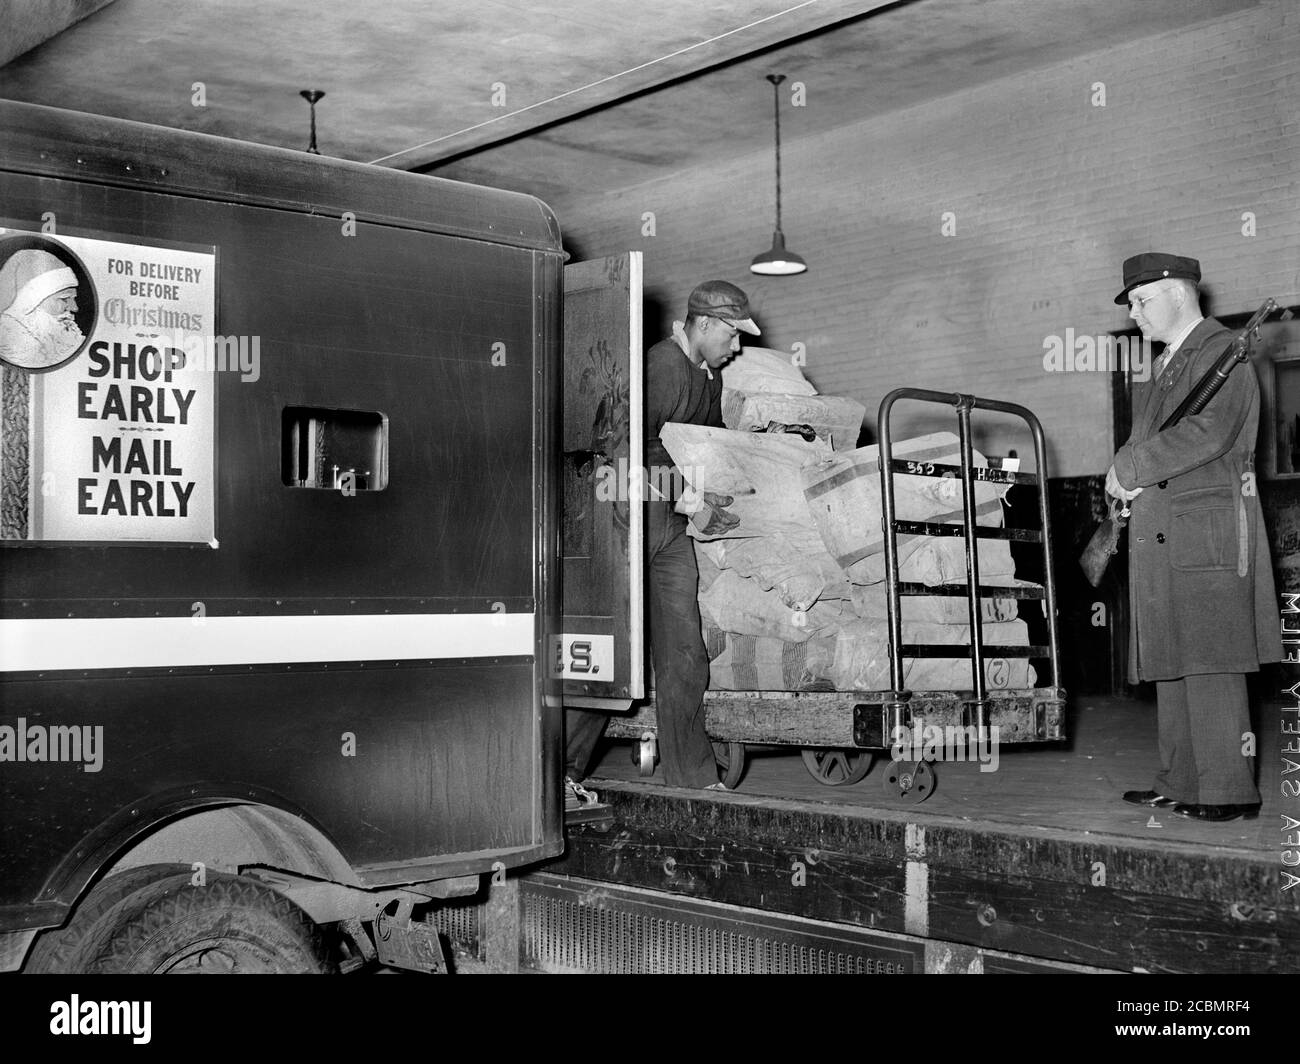 Travailleurs sur la plate-forme de chargement mettant du courrier sur des camions, main Post Office, Washington, D.C., États-Unis, Arthur Rothstein, U.S. Office of War information, 1938 Banque D'Images